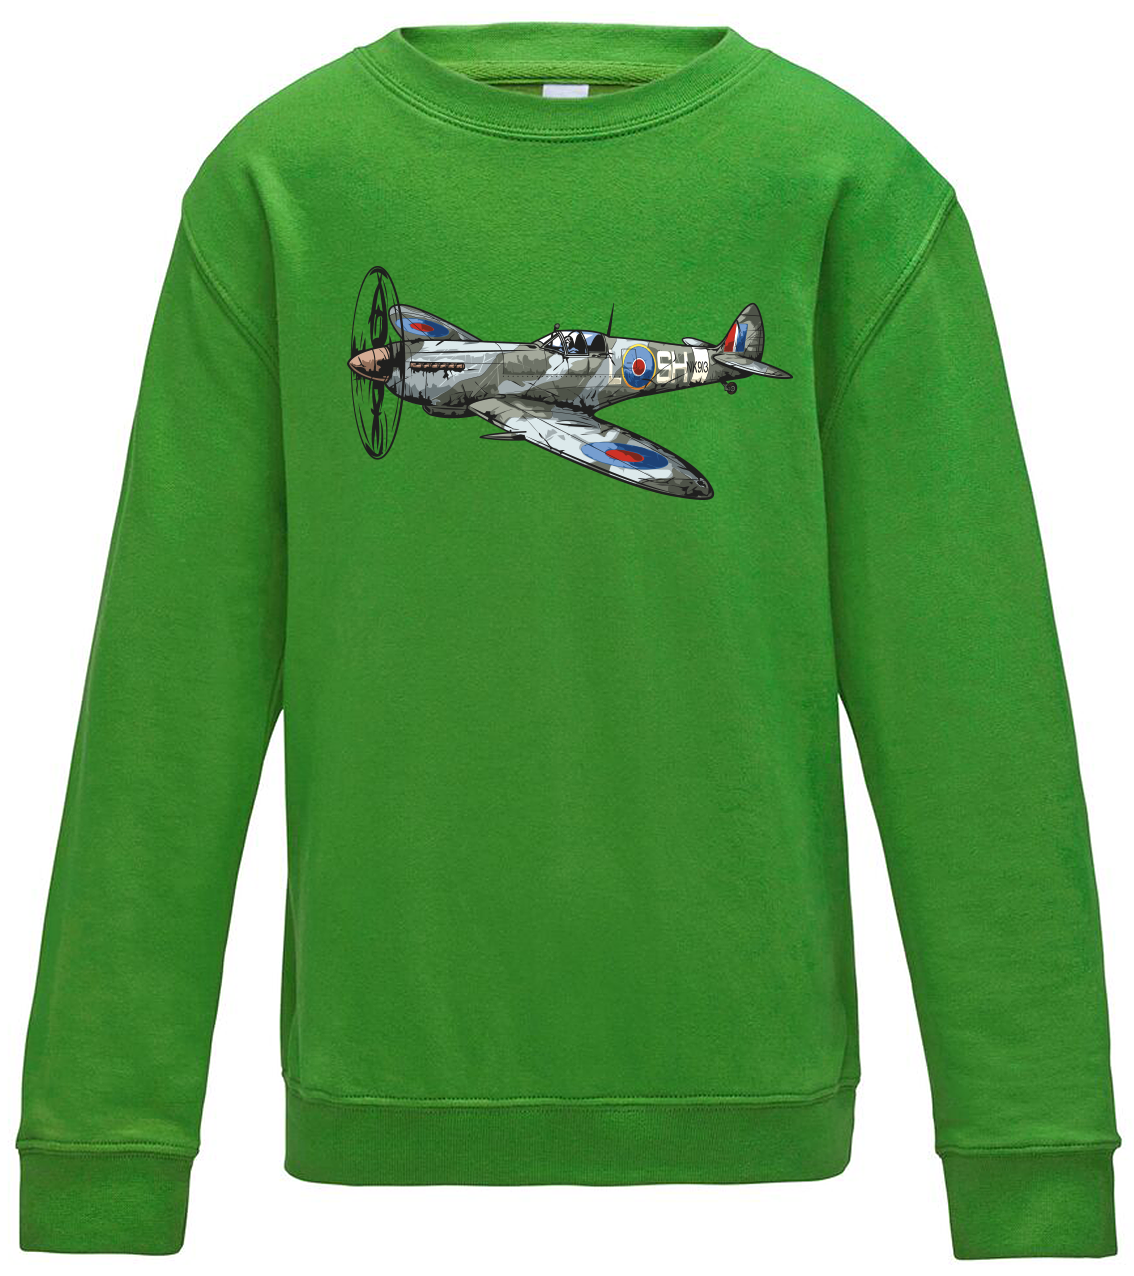 Dětská mikina s letadlem - Spitfire Velikost: 5/6 (110/116), Barva: Zelená